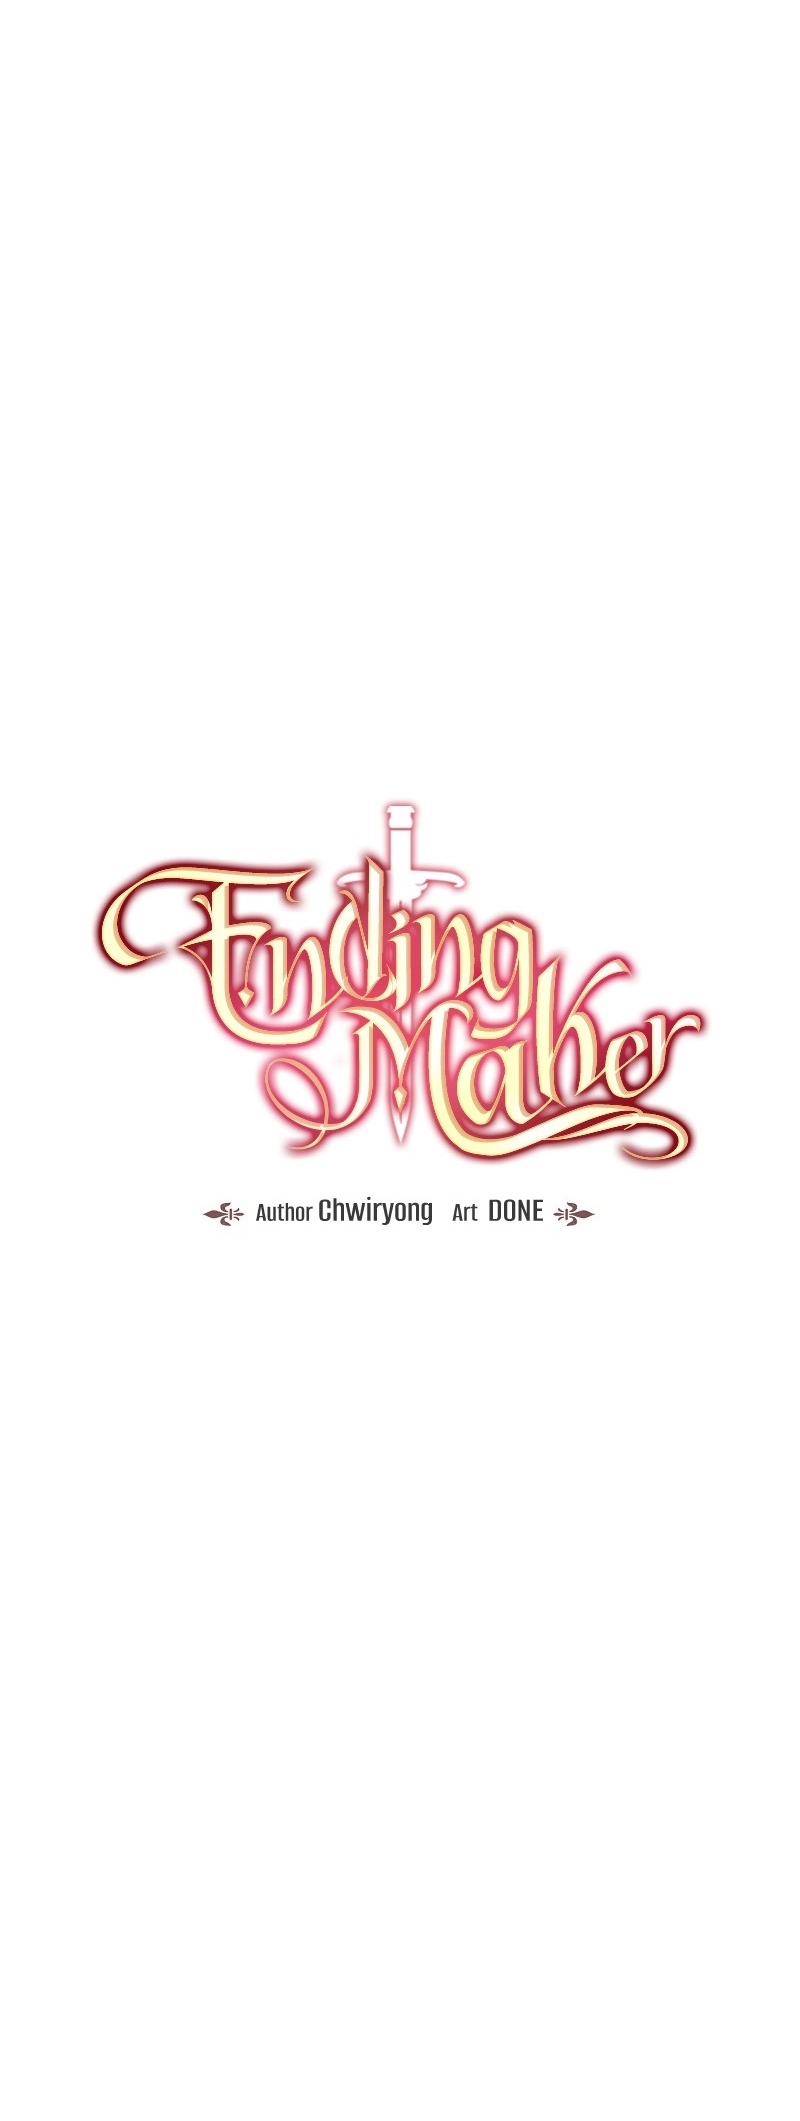 Ending Maker18 07